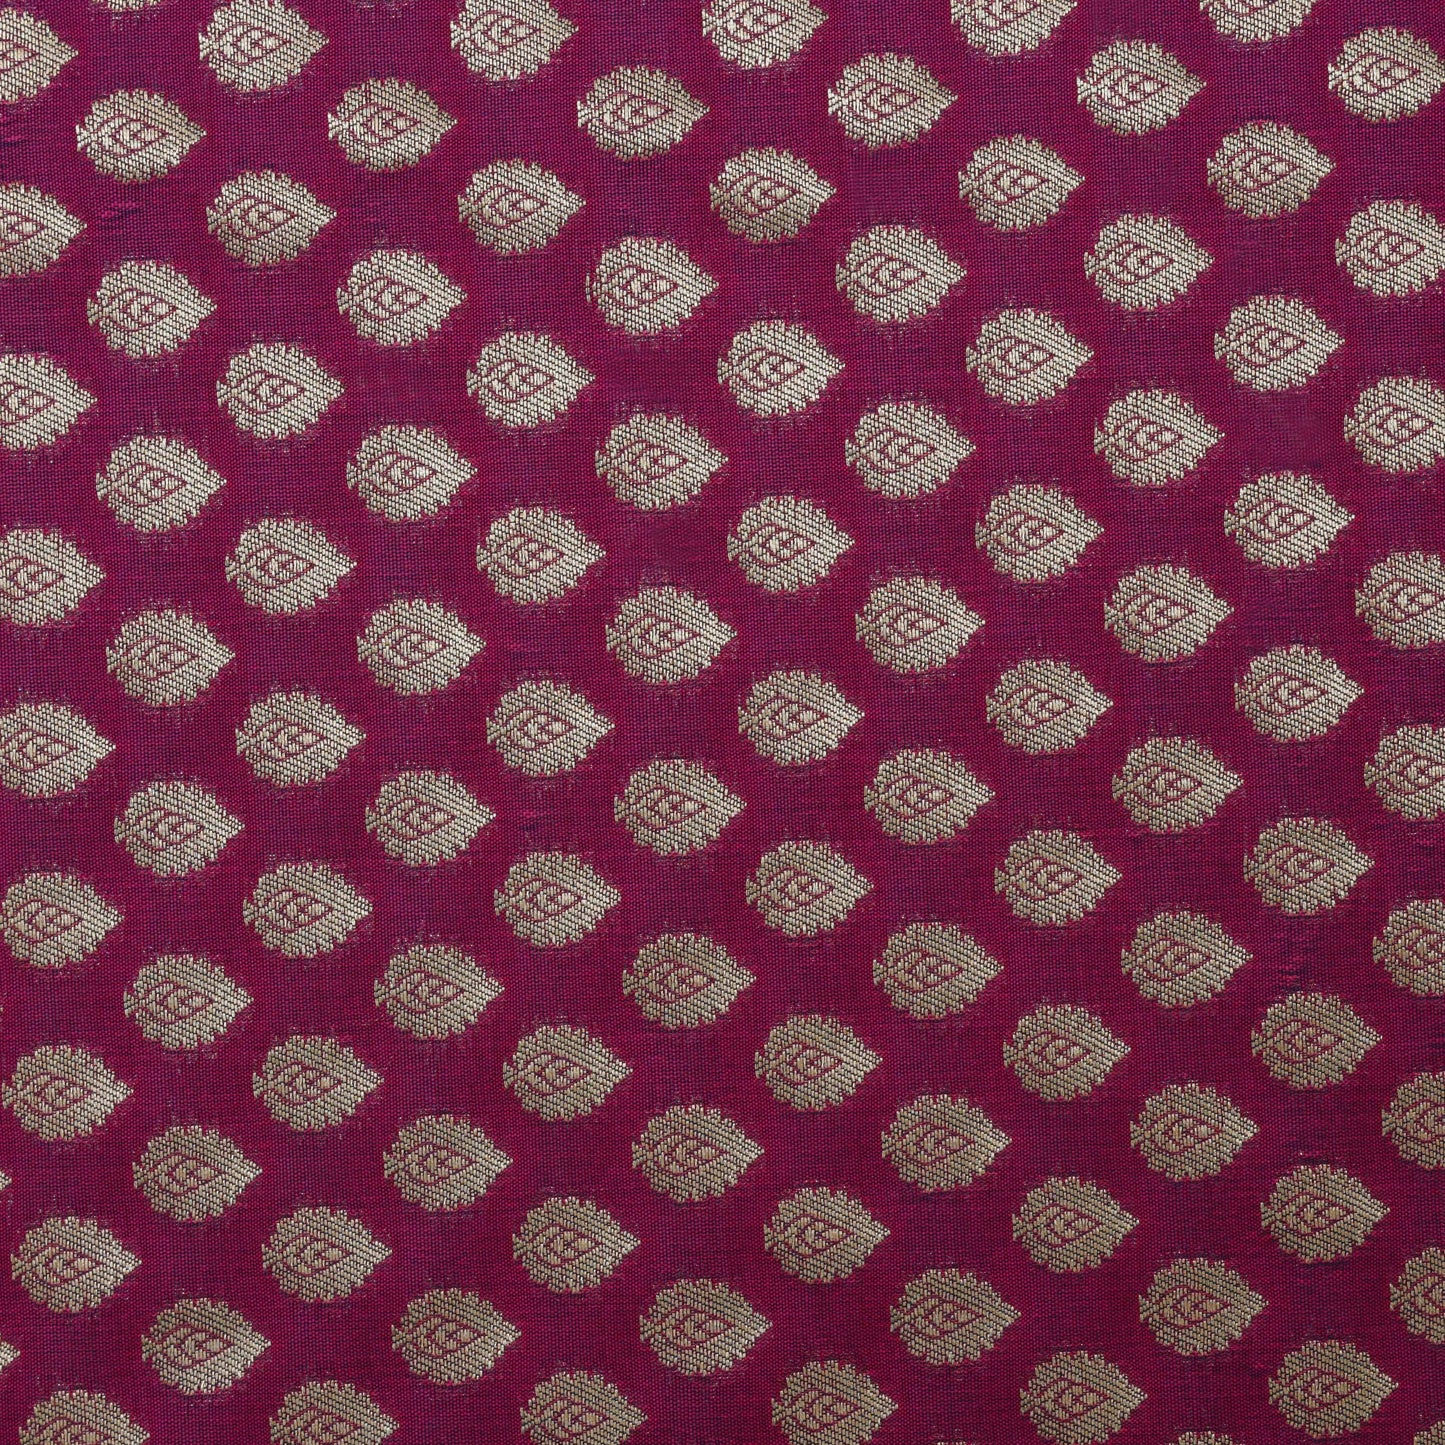 Rani Colored Pauri Booti Fabric